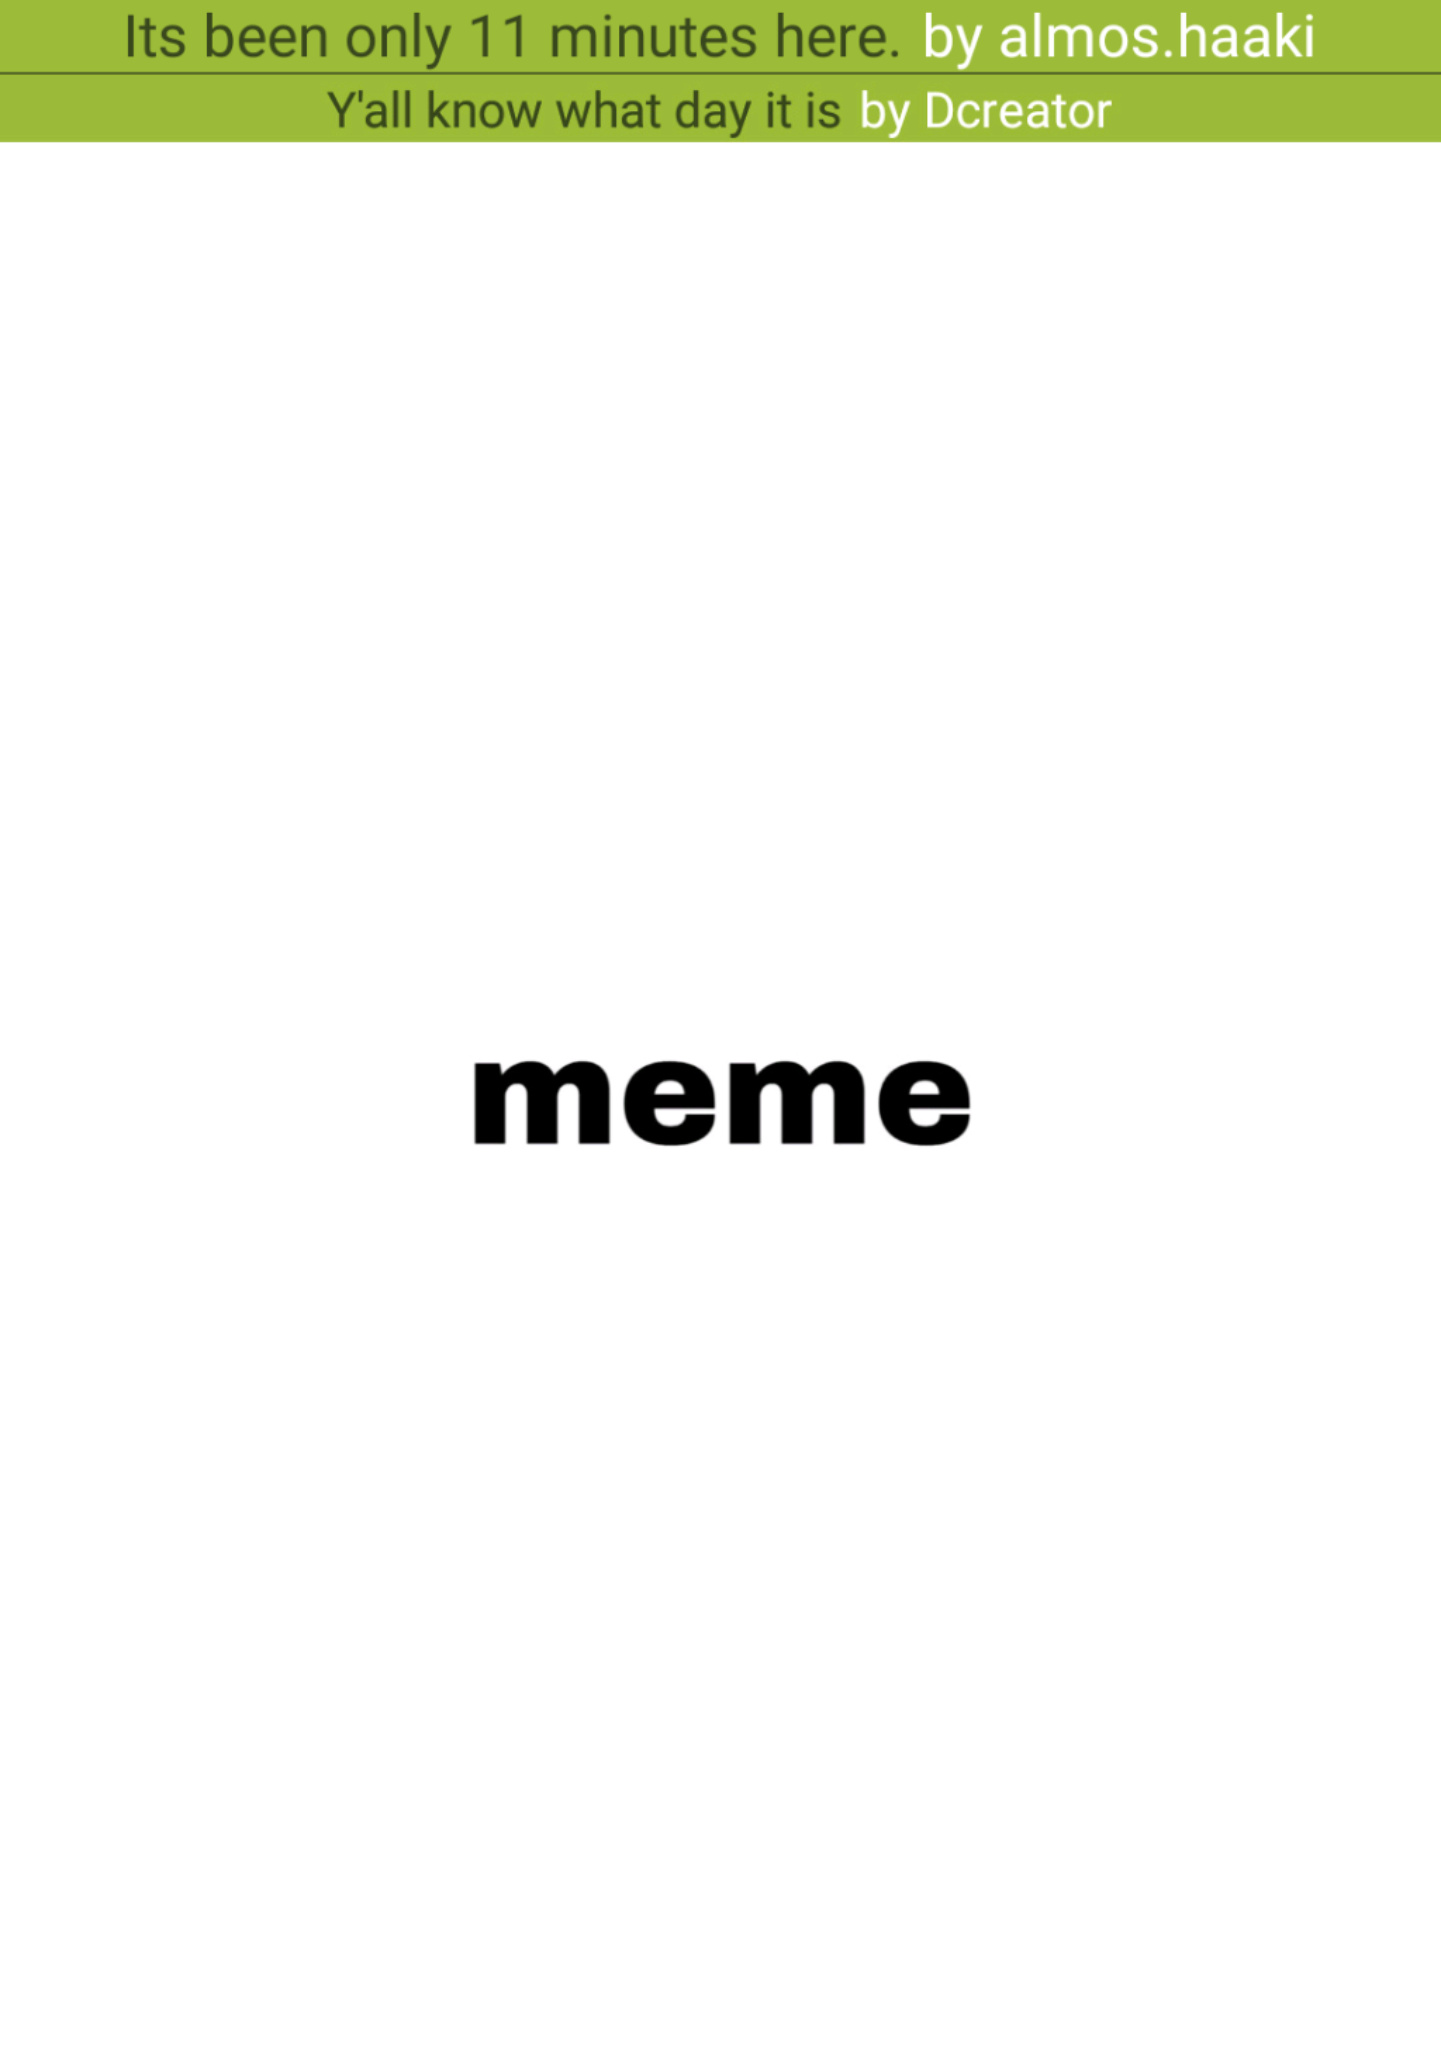 yeet - meme